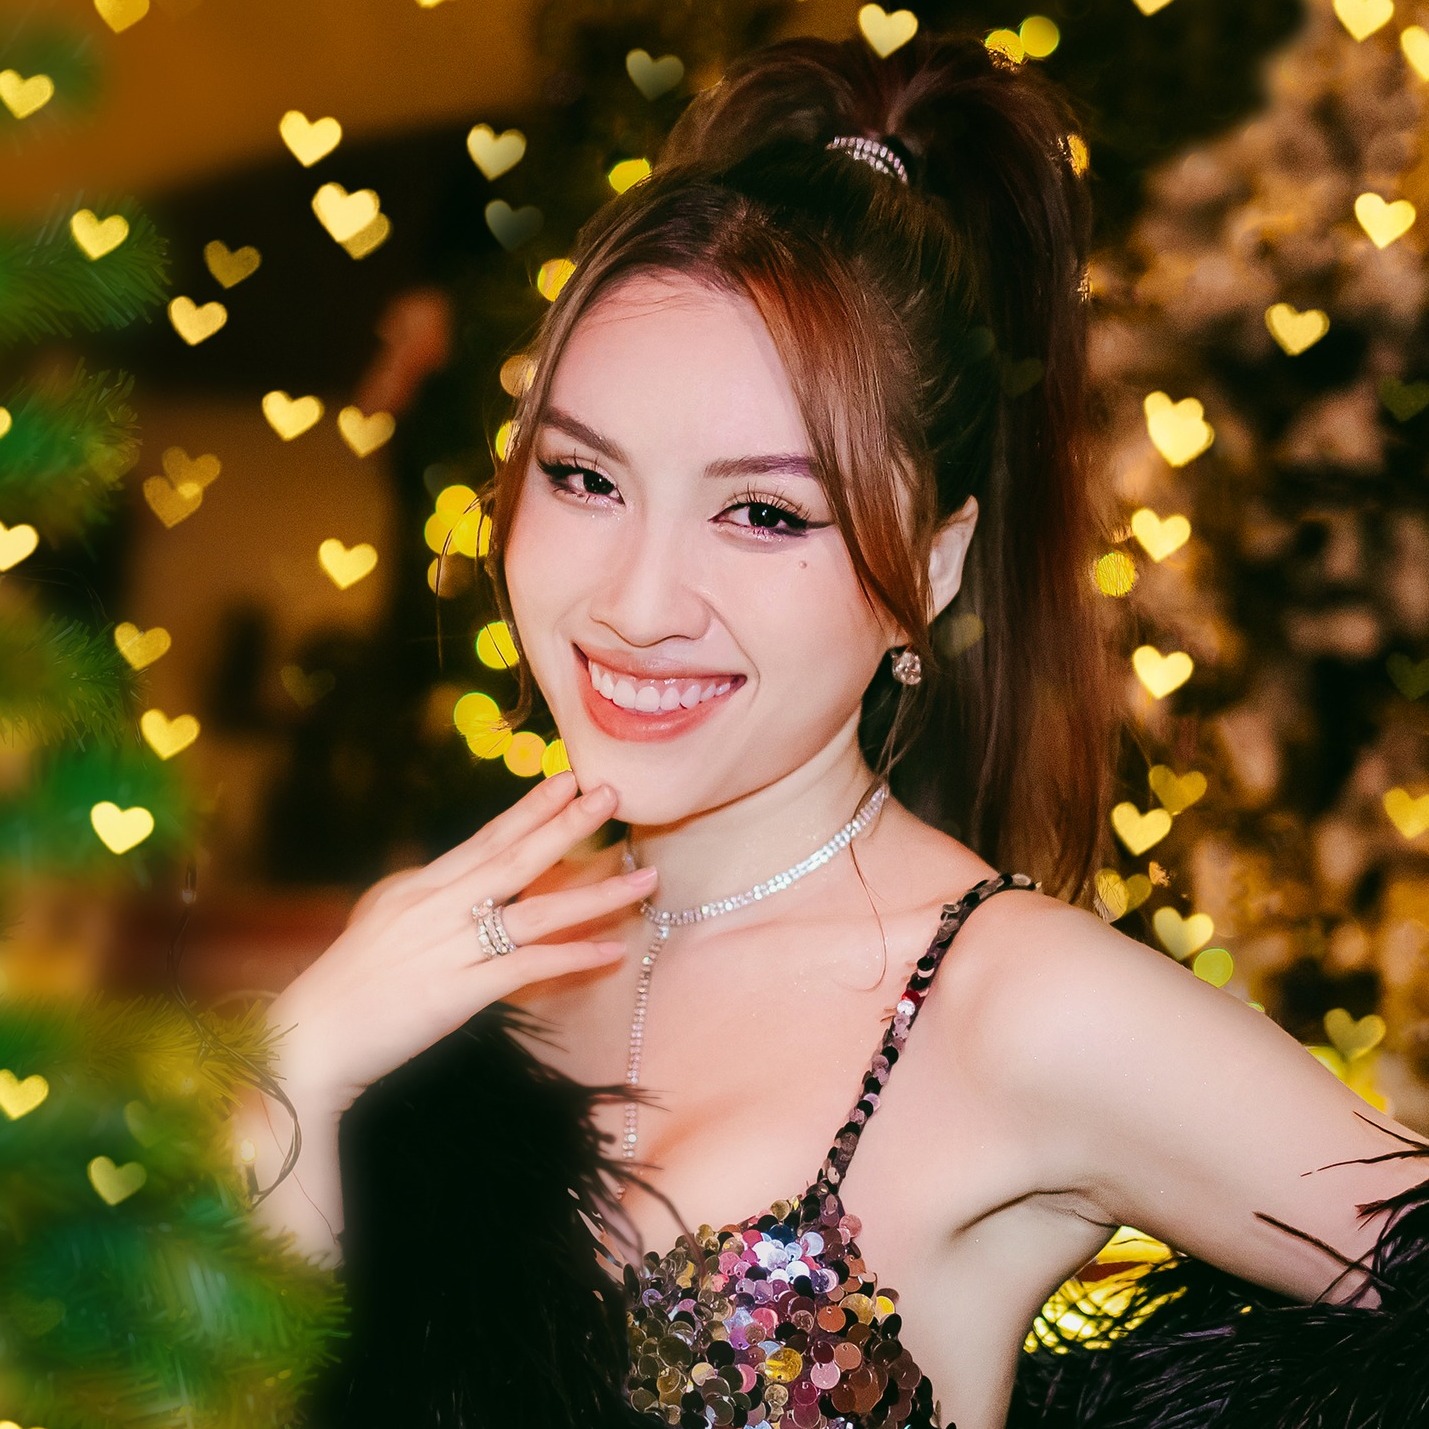 Thanh Thanh Huyền lên tiếng làm rõ danh xưng hoa hậu, nói về tin đồn tăng giá cát-xê khi thành Miss Charm Vietnam - ảnh 2